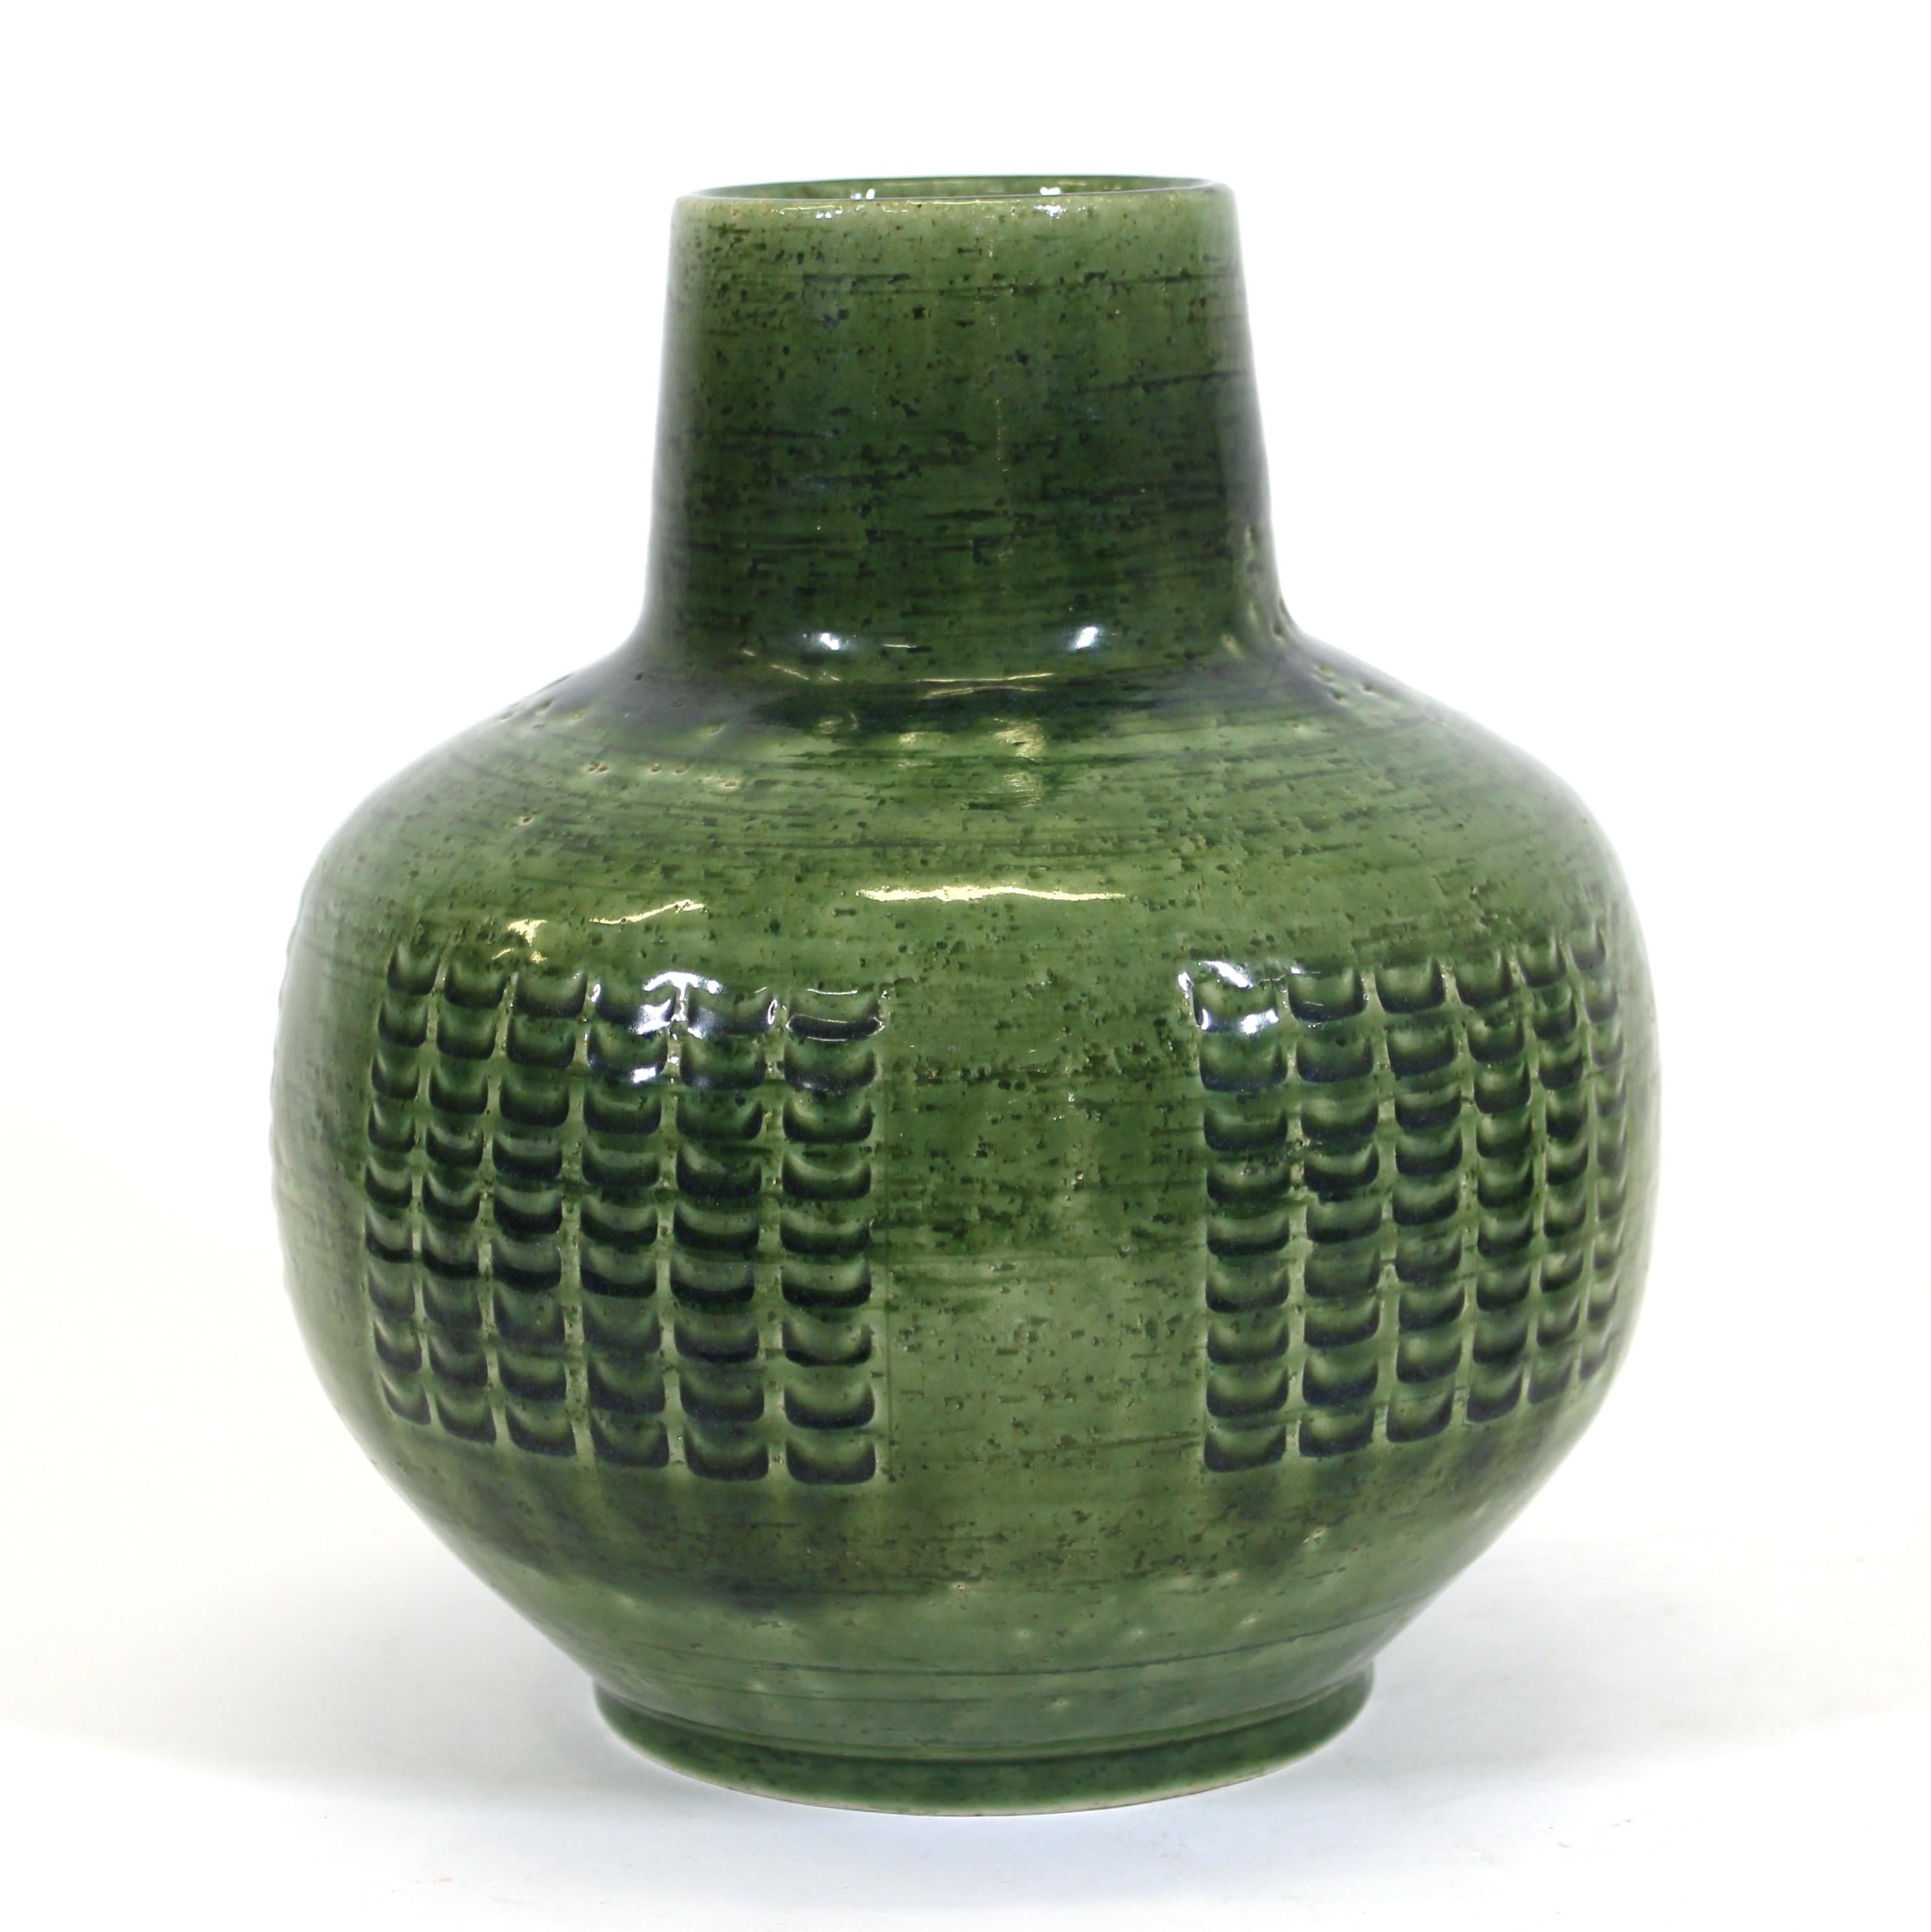 Per Linnemann-Schmidt for Palshus Danish Mid-Century Modern green glazed heavy ceramic vase, marked and signed on the bottom.